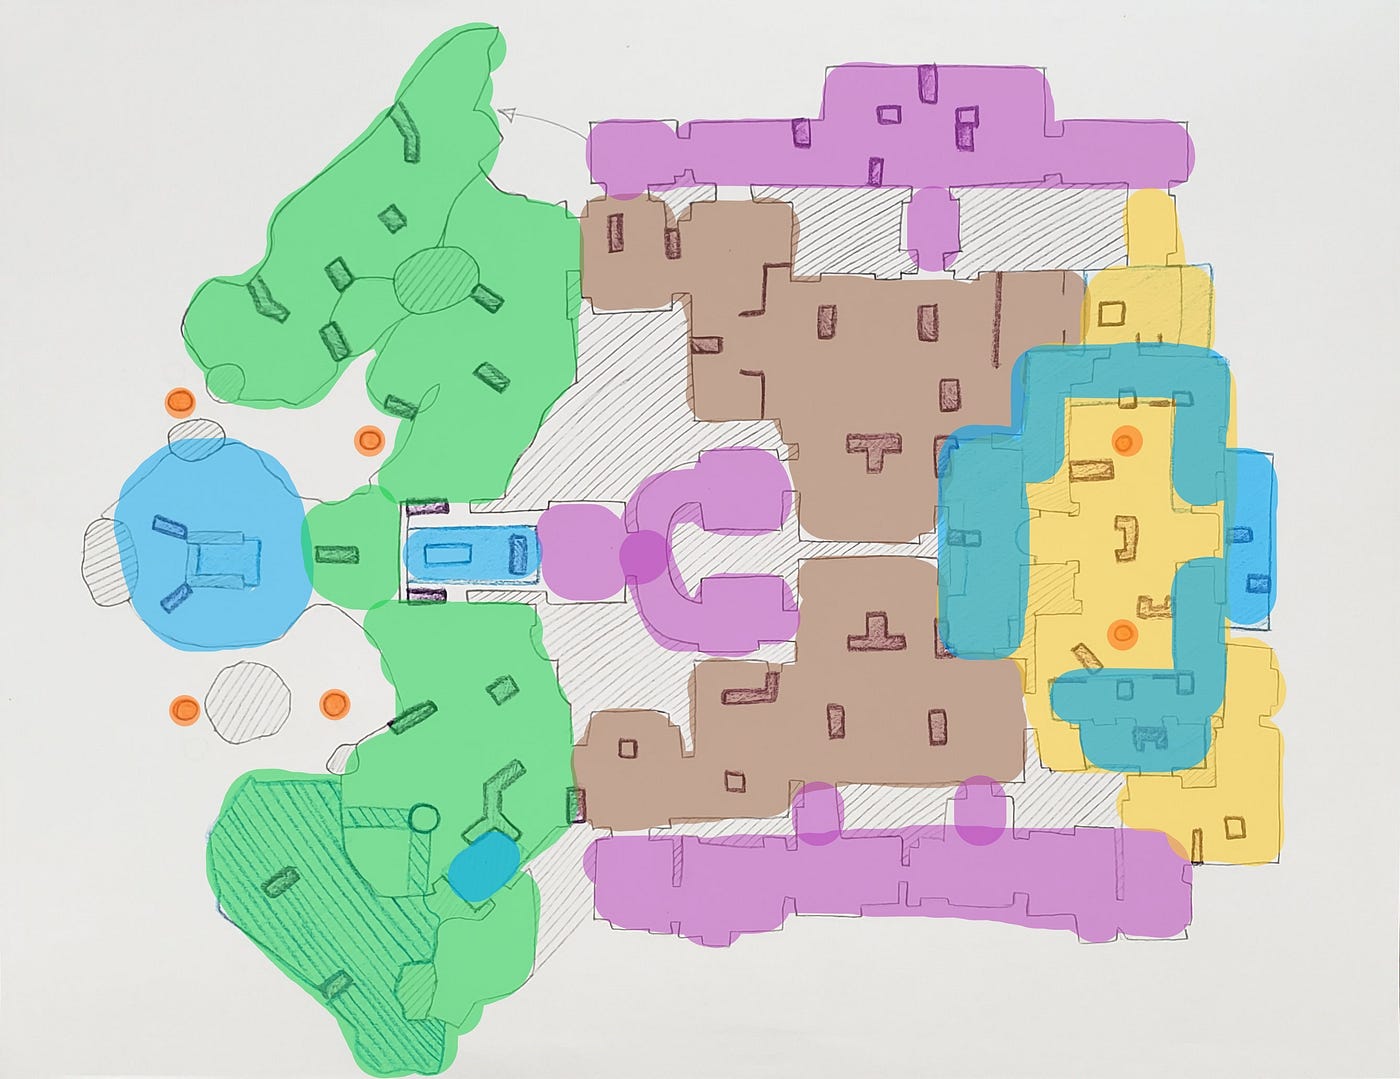 Atualização de Uncharted 4 traz novo mapa multiplayer